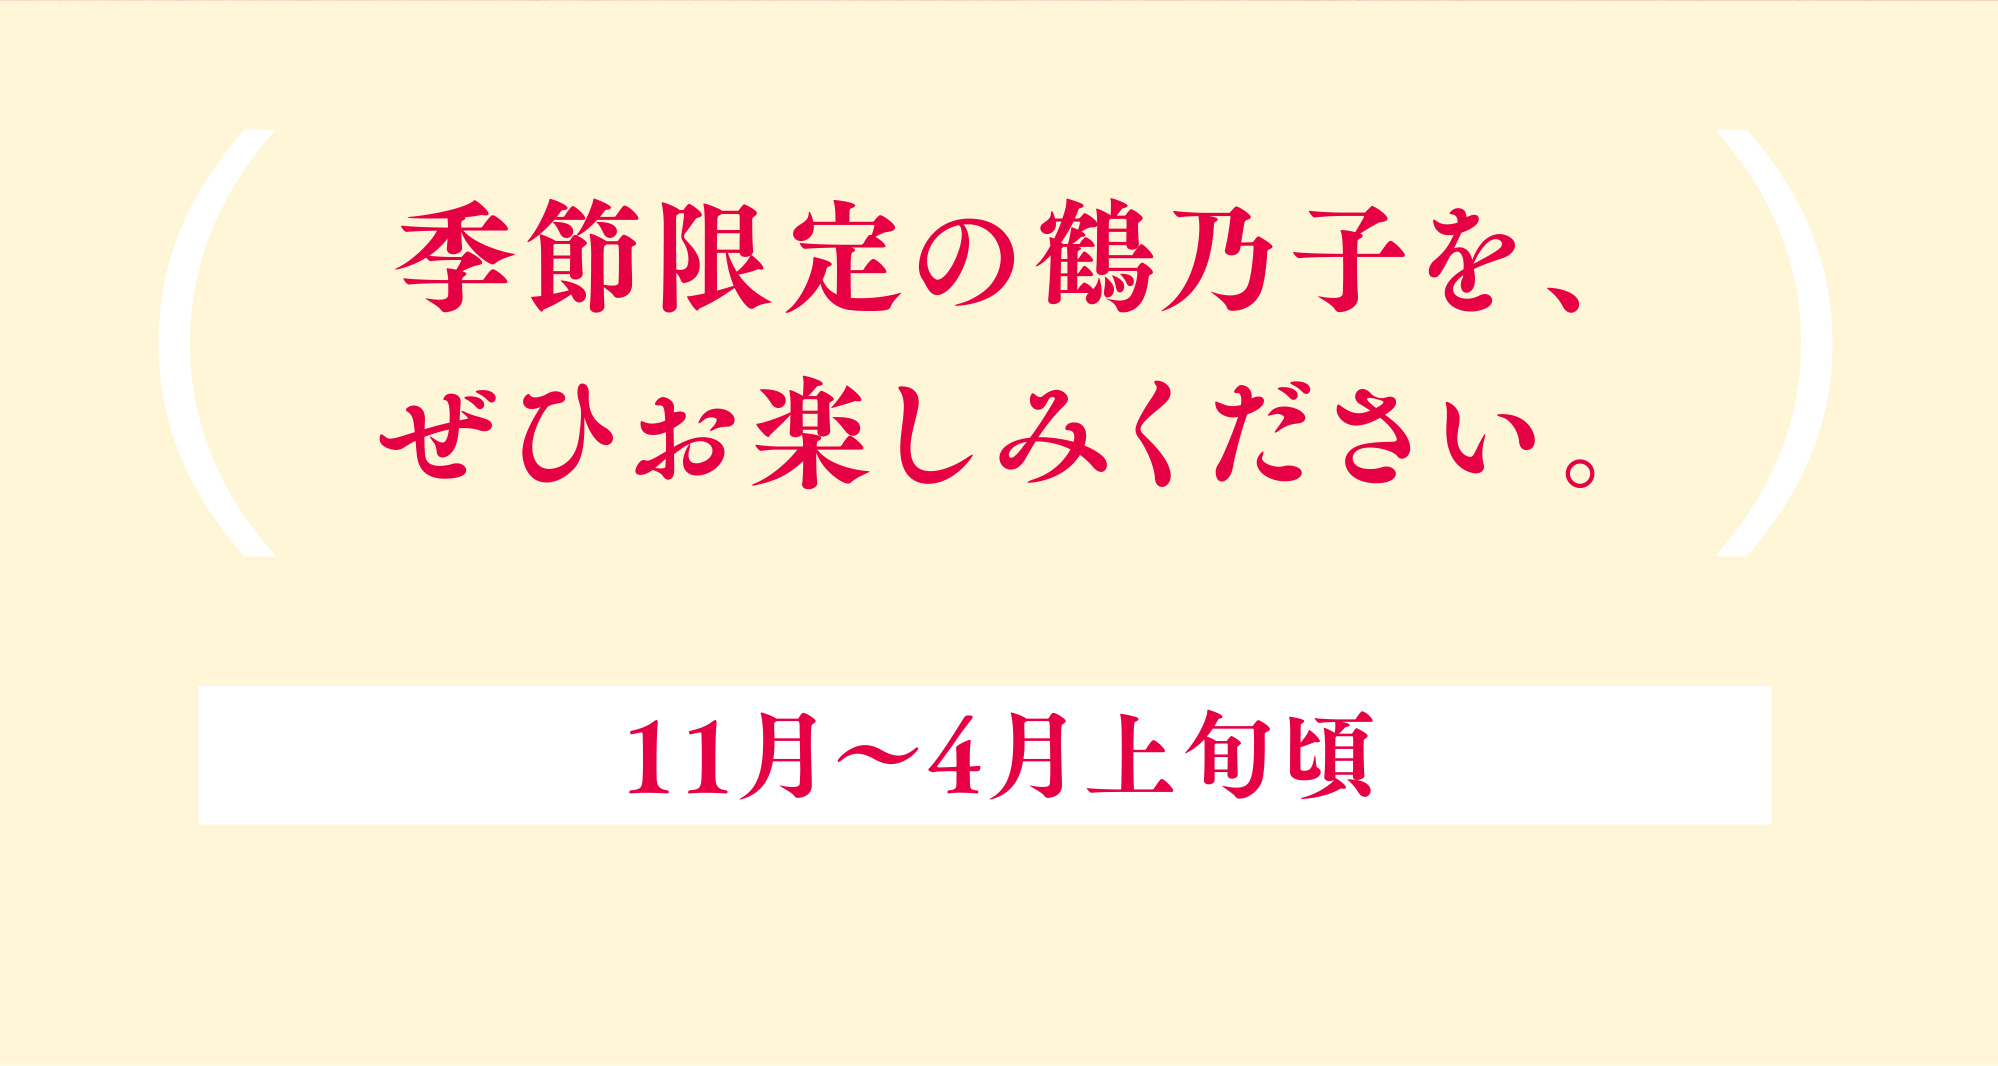 季節限定の鶴乃子を、ぜひお楽しみください。 11月〜4月上旬頃